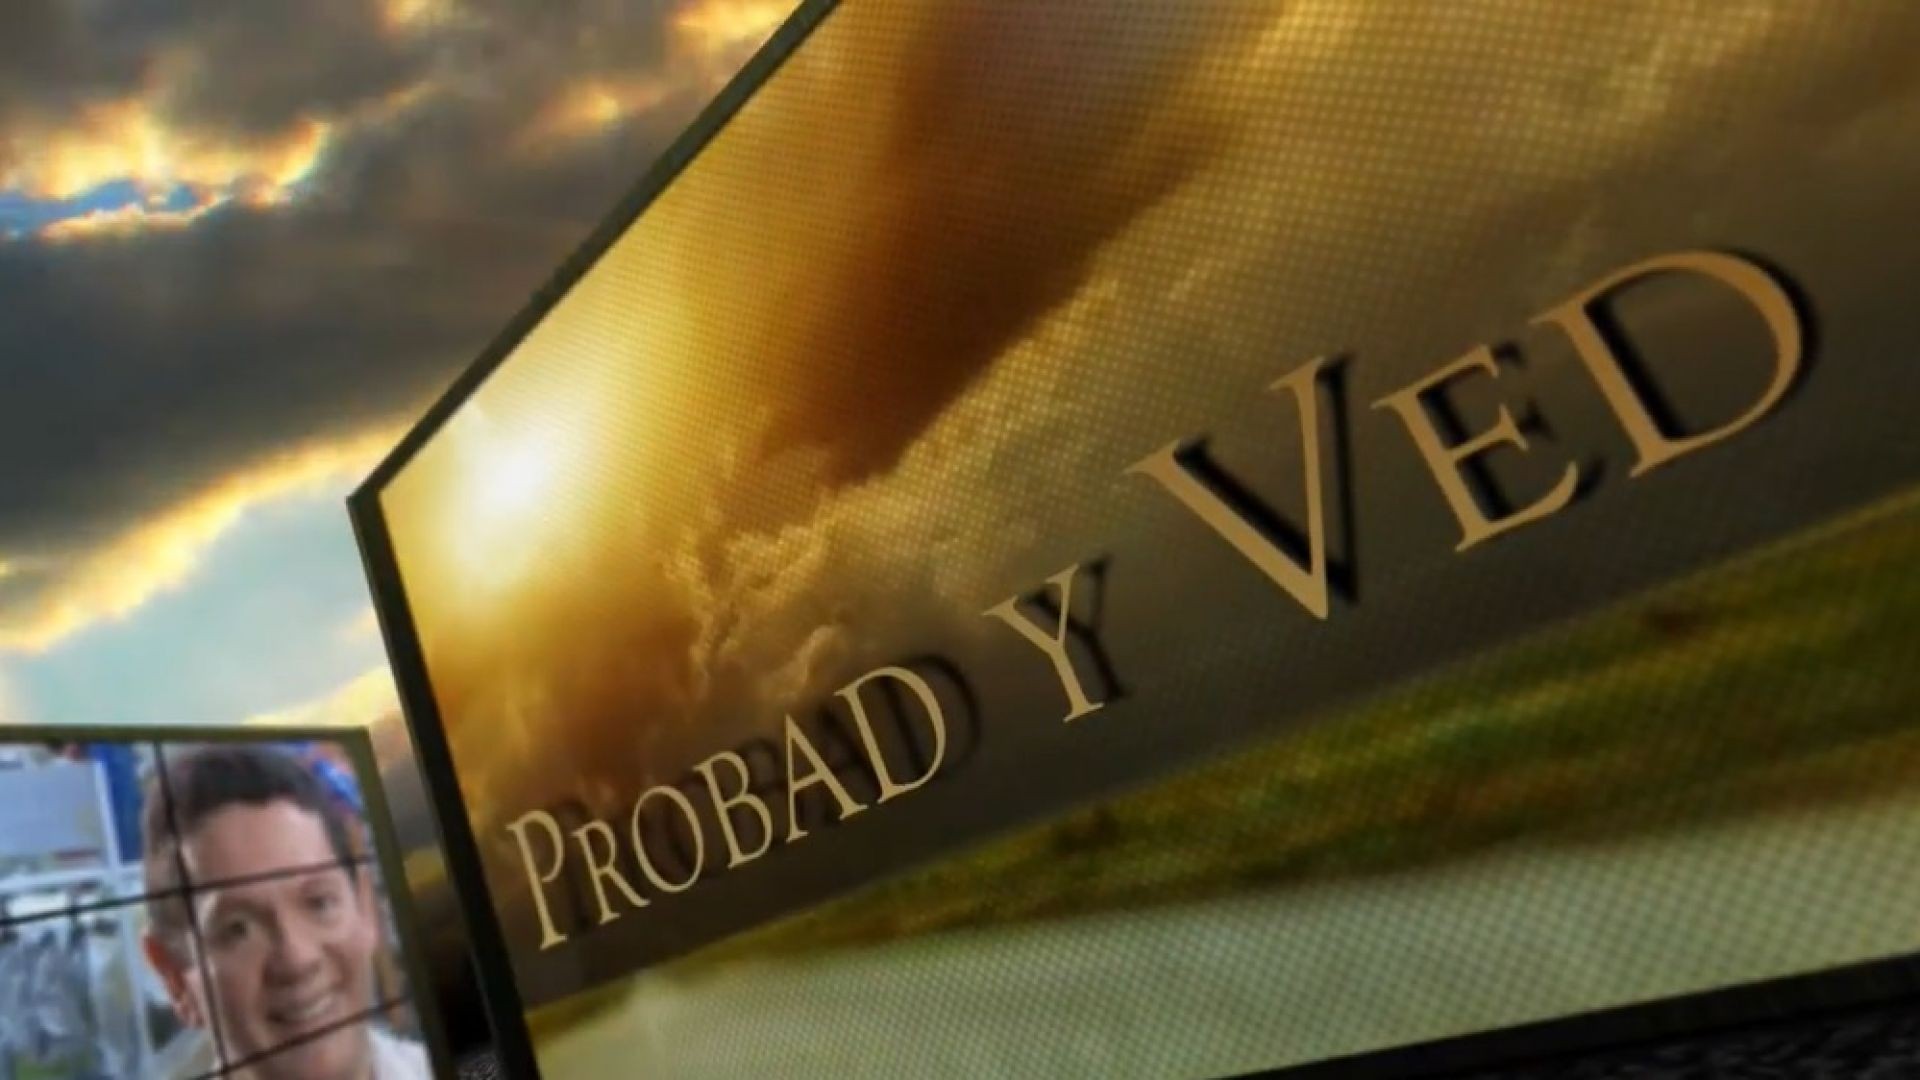 Probad y Ved 2013 -  Construyendo sueños - 2/Mar